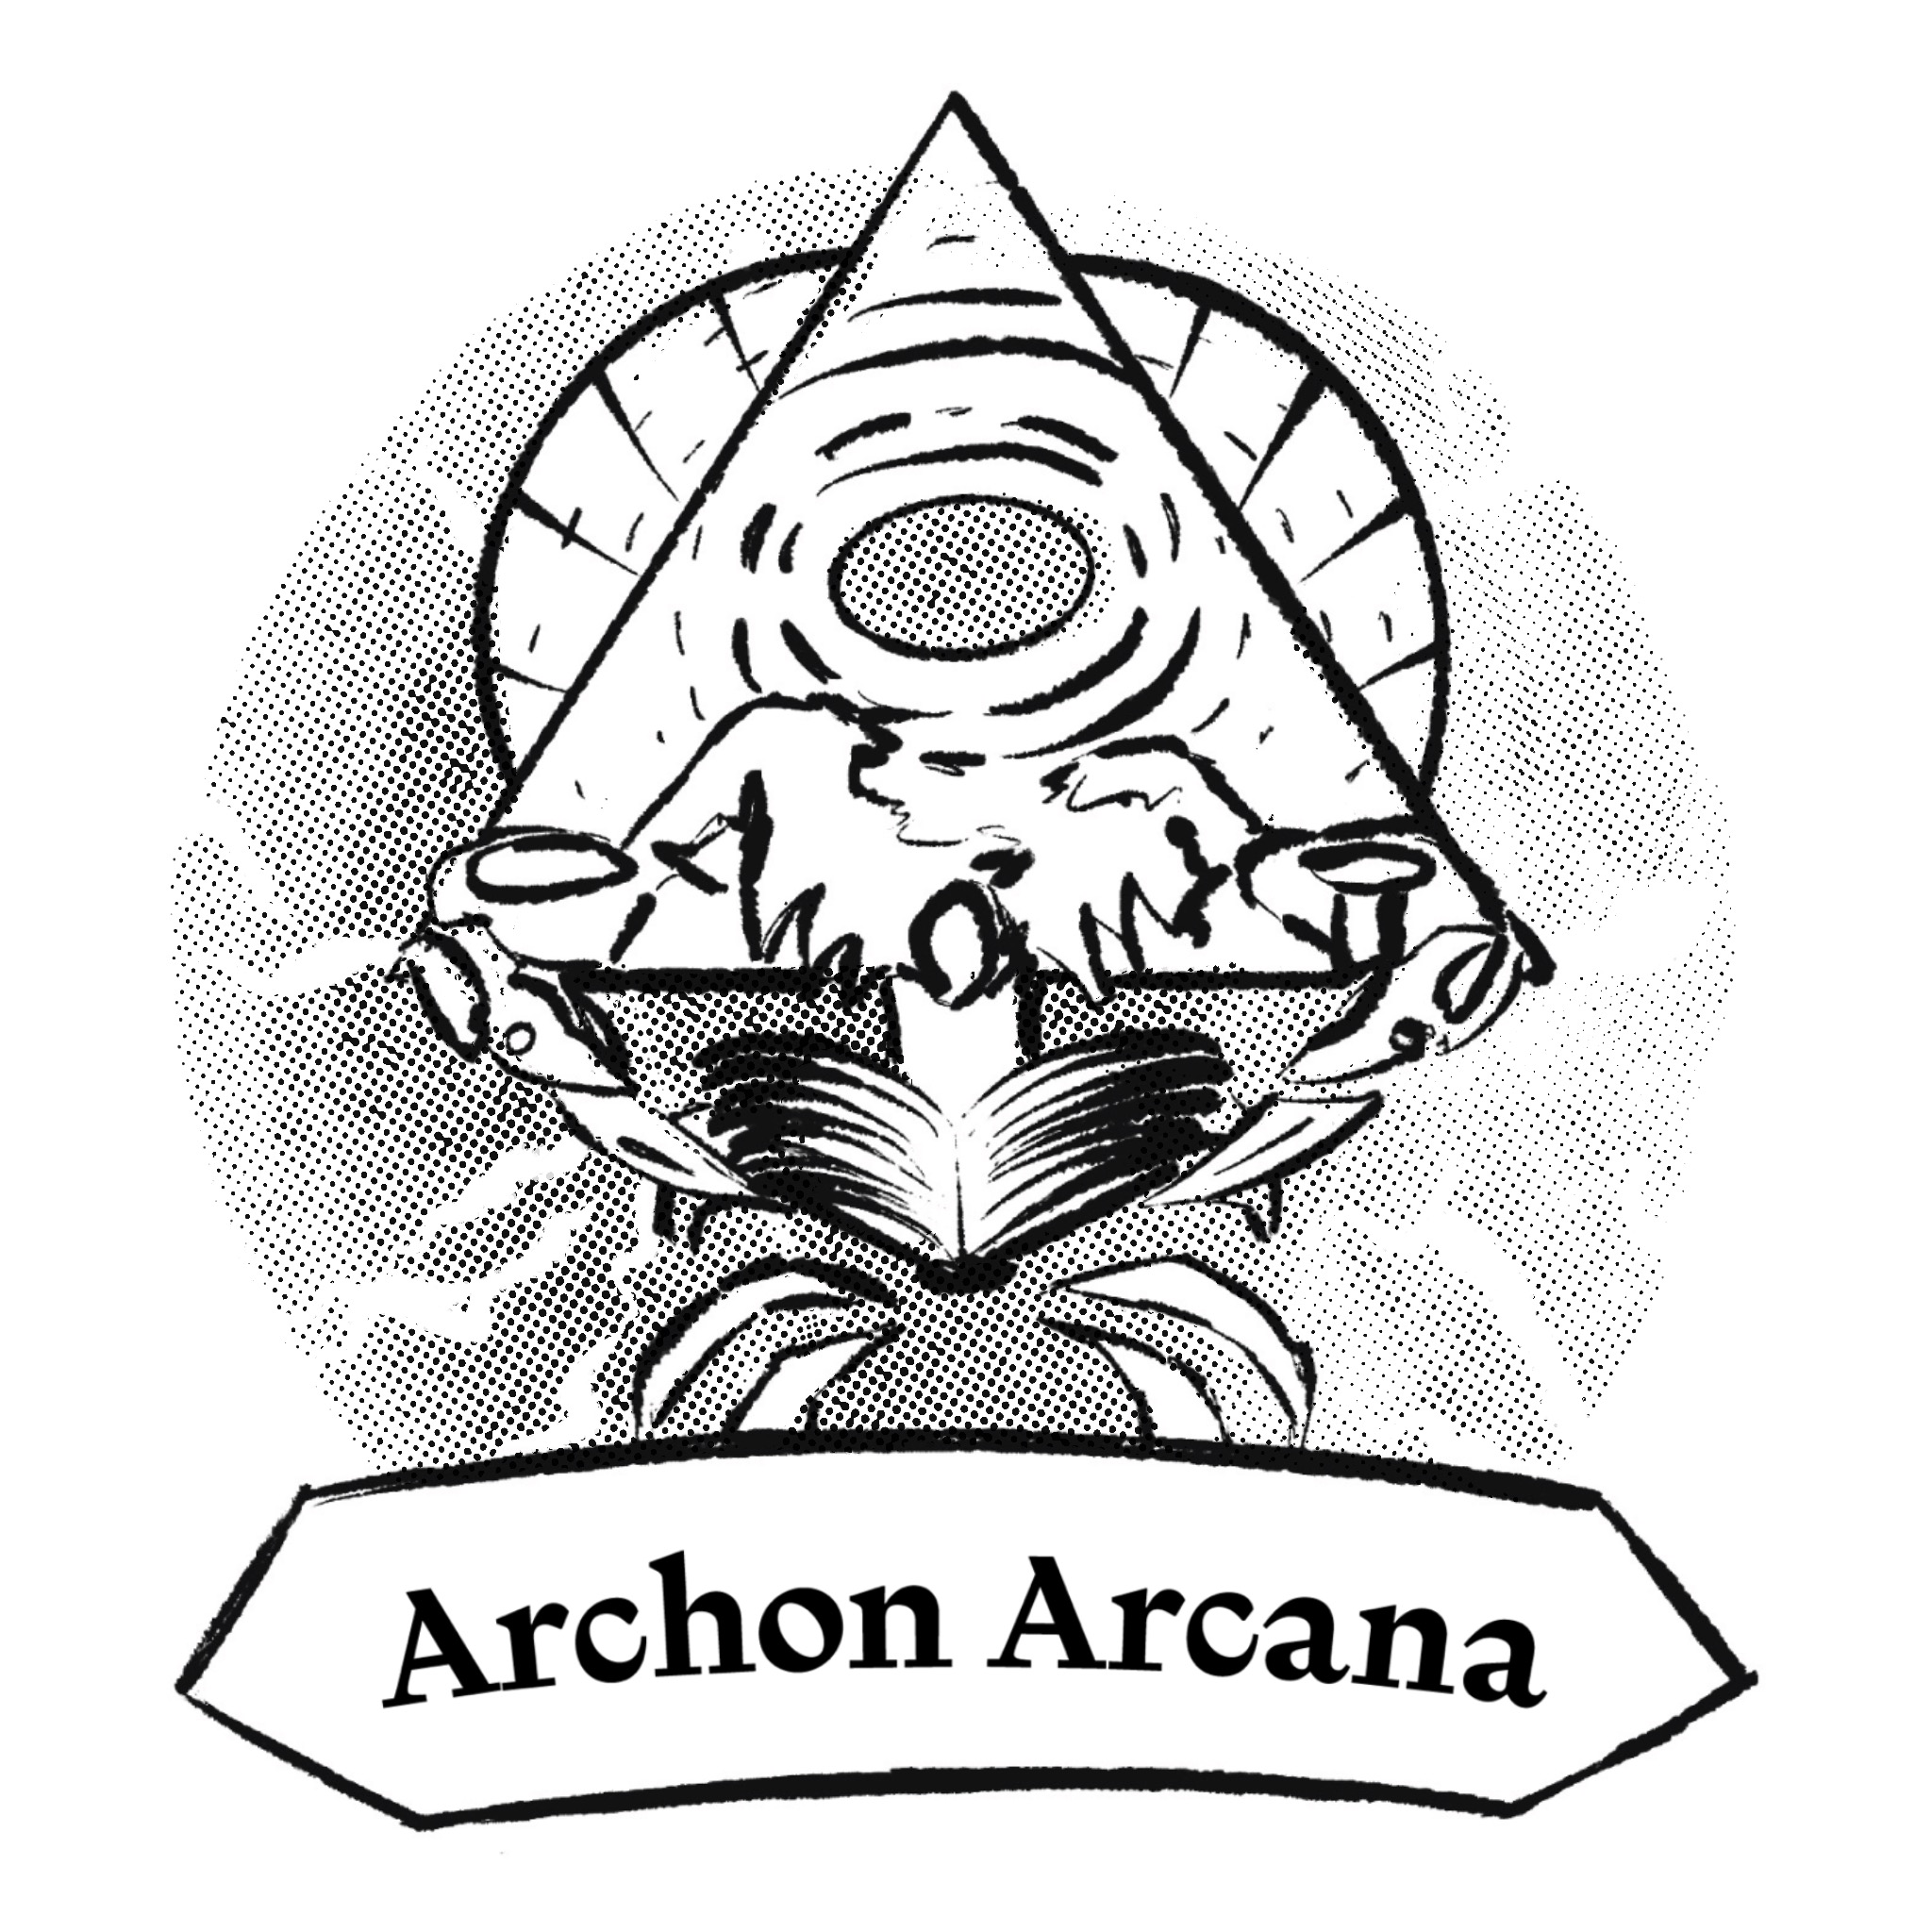 The Archon Arcana logo, an Archon holding an open book